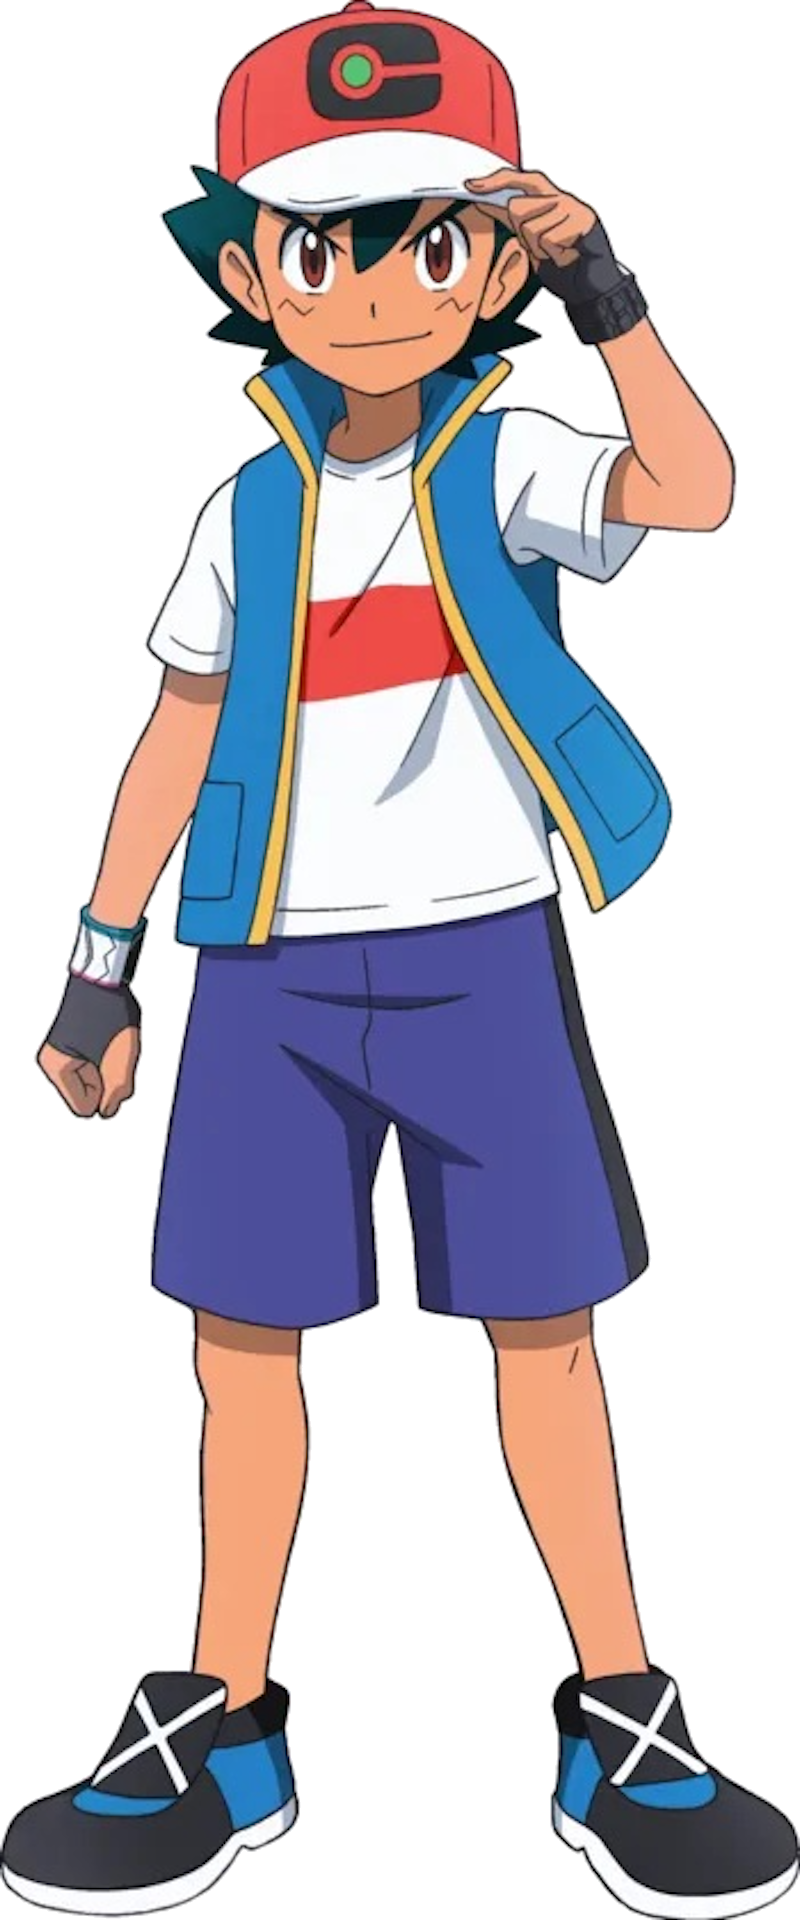 Ash Ketchum | Pokémon Wiki | Fandom